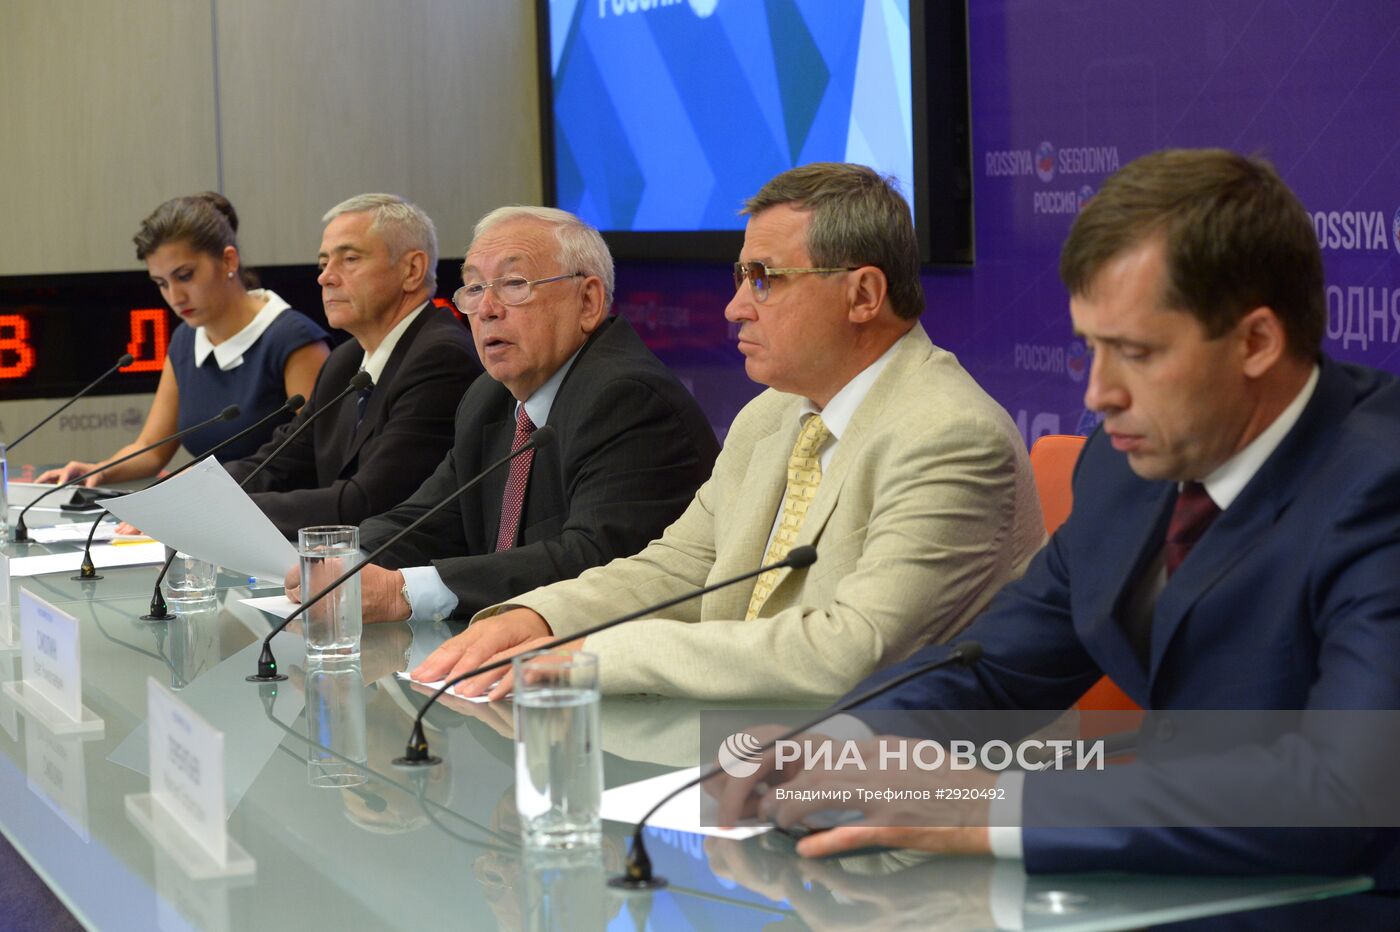 Пресс-конференция по вопросам участия сборной команды России в XV летних Паралимпийских играх 2016 г. в г. Рио-де-Жанейро (Бразилия)